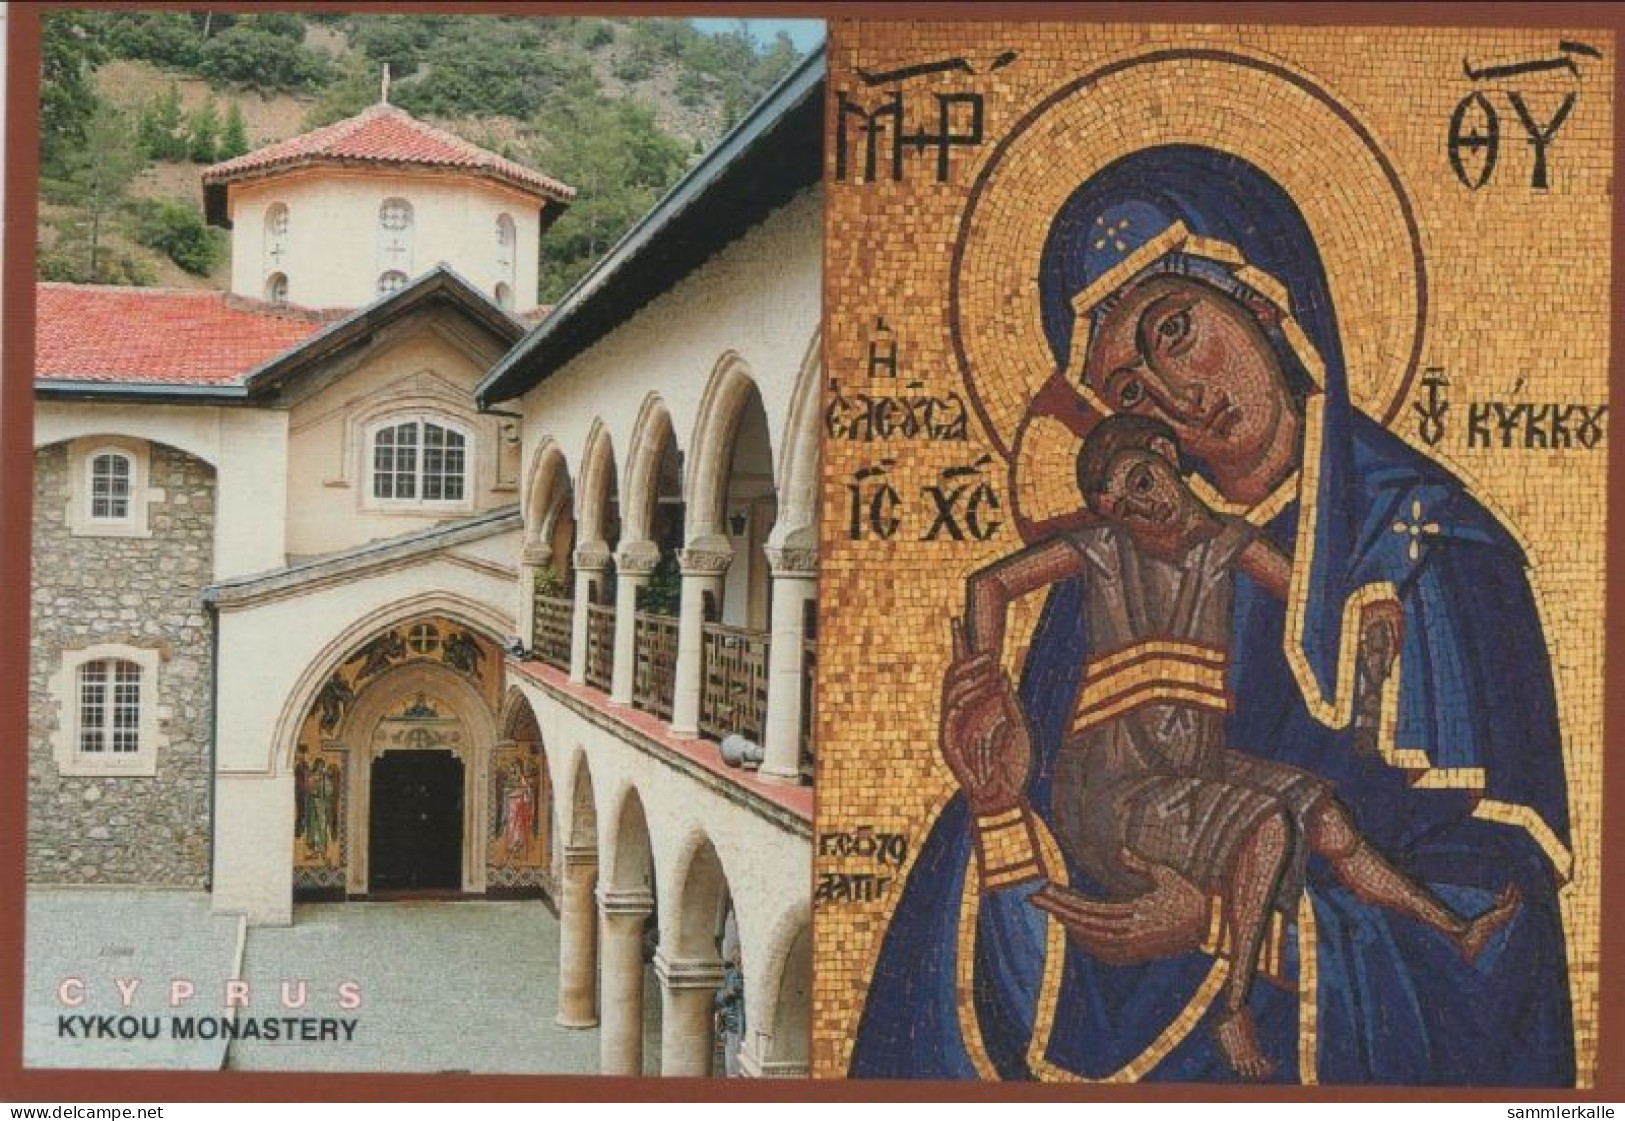 9001084 - Zypern (Sonstiges) - Zypern - Kykou Monastery - Zypern